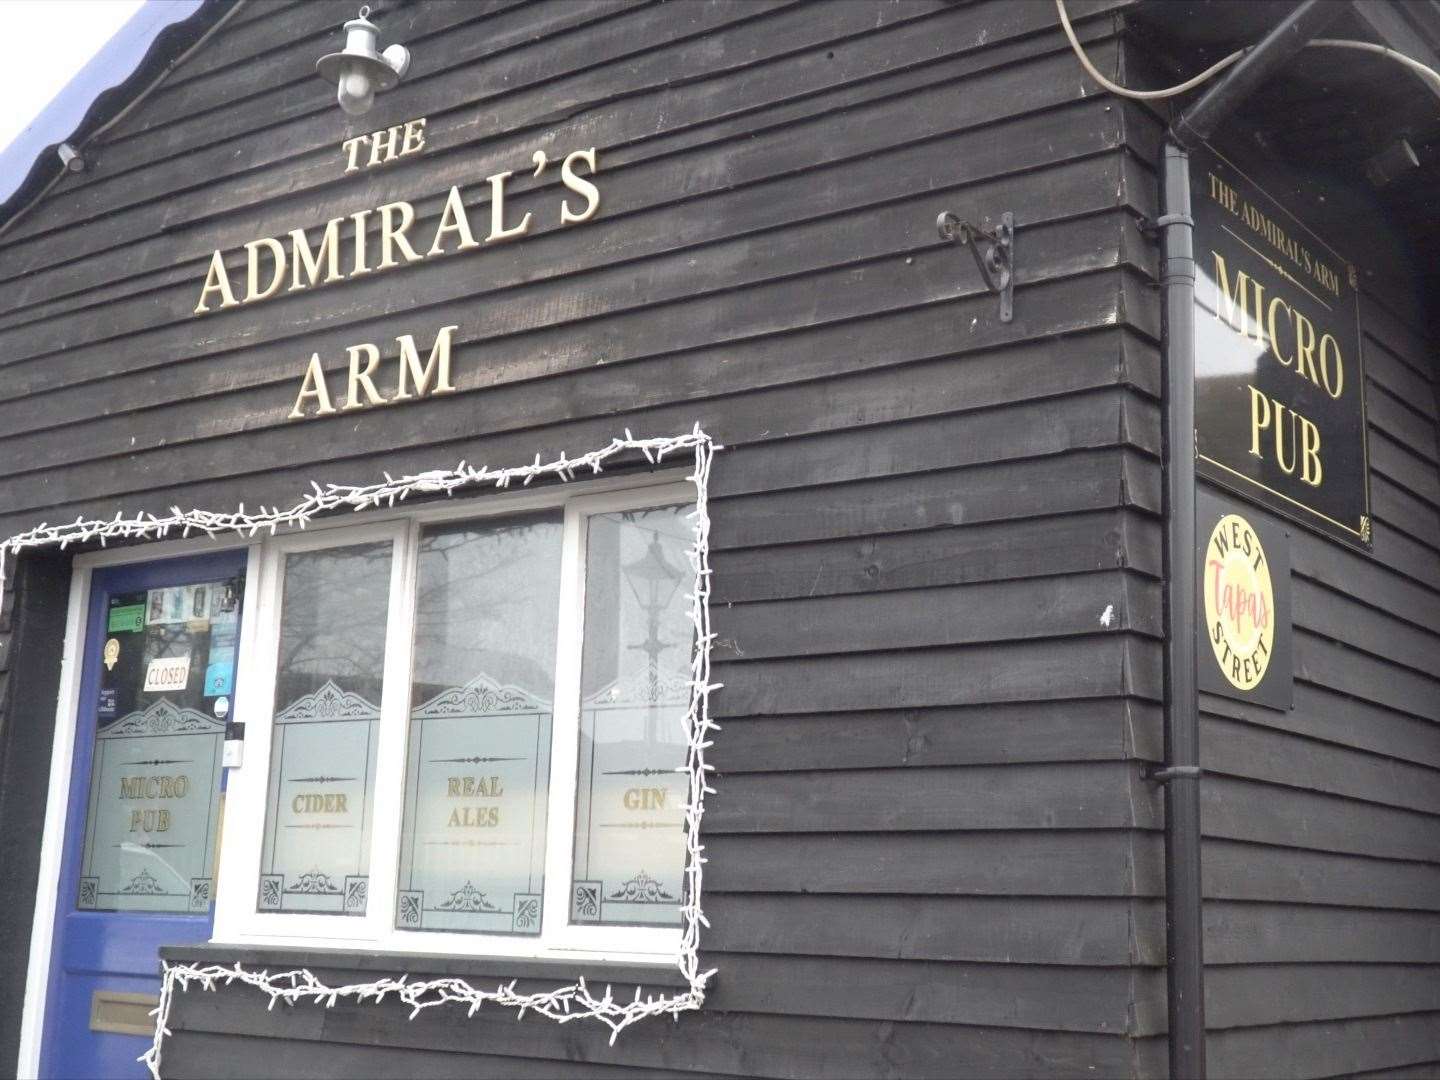 The Amiral's Arm micropub in Queenborough